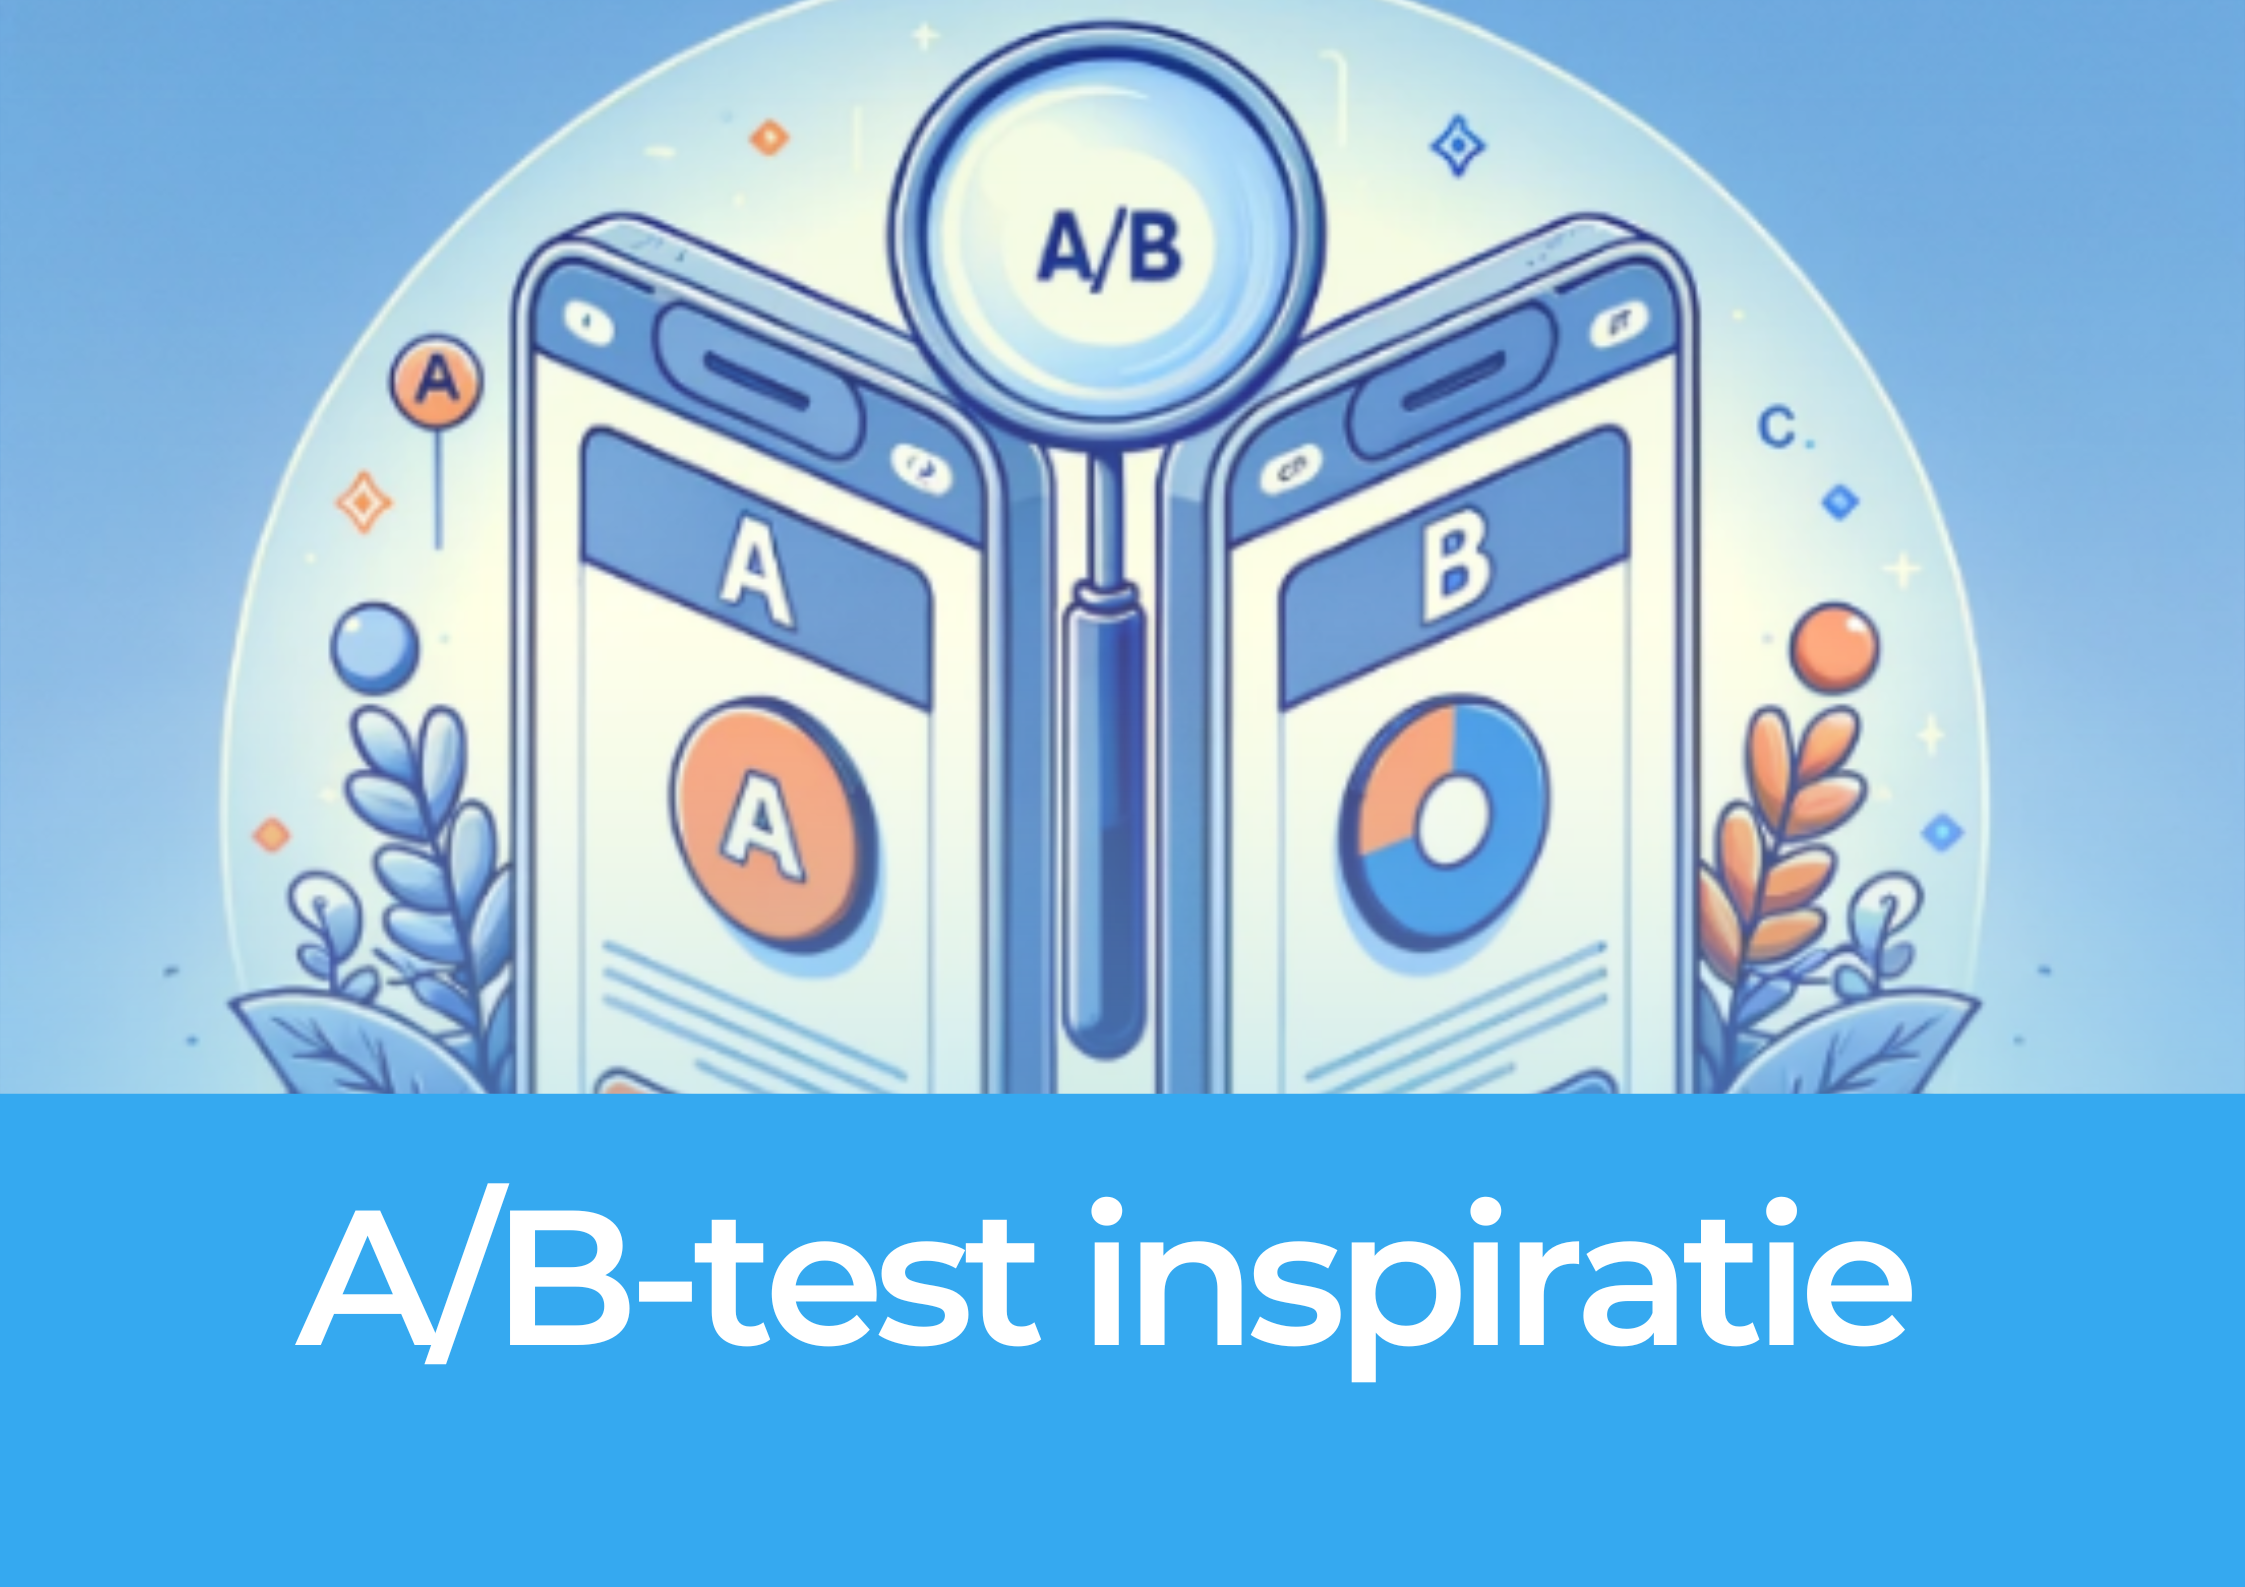 A/B-test inspiratie